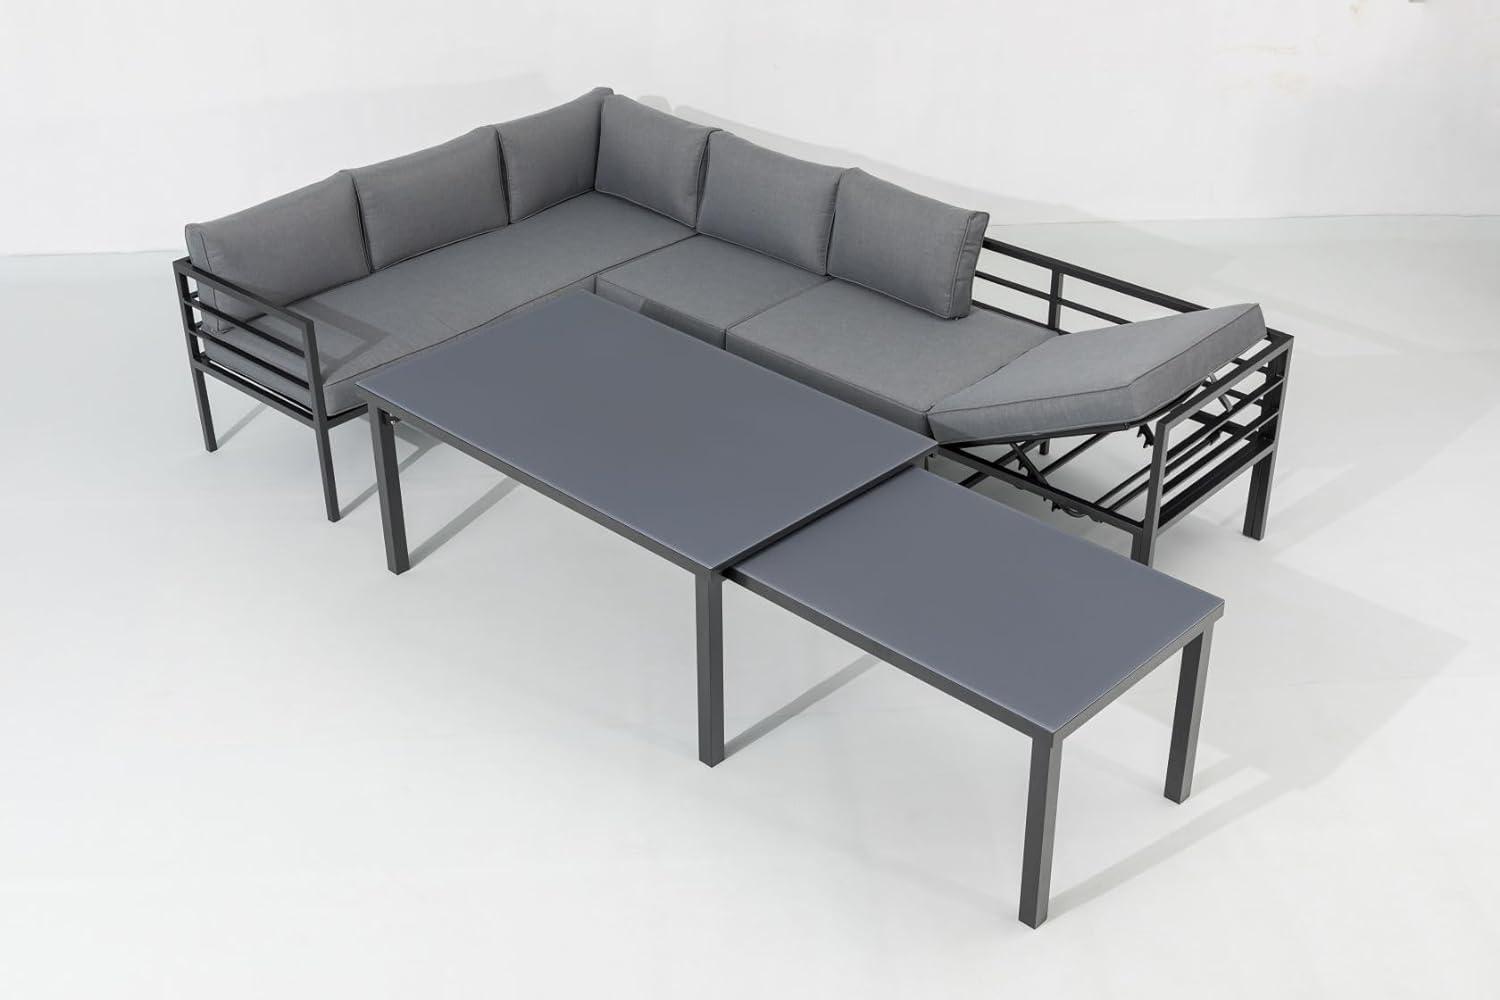 LARINO Ecklounge Gartenmöbel Sitzgruppe mit Ausziehtisch, Aluminium Anthrazit, 305 x 86 x 194 cm Bild 1